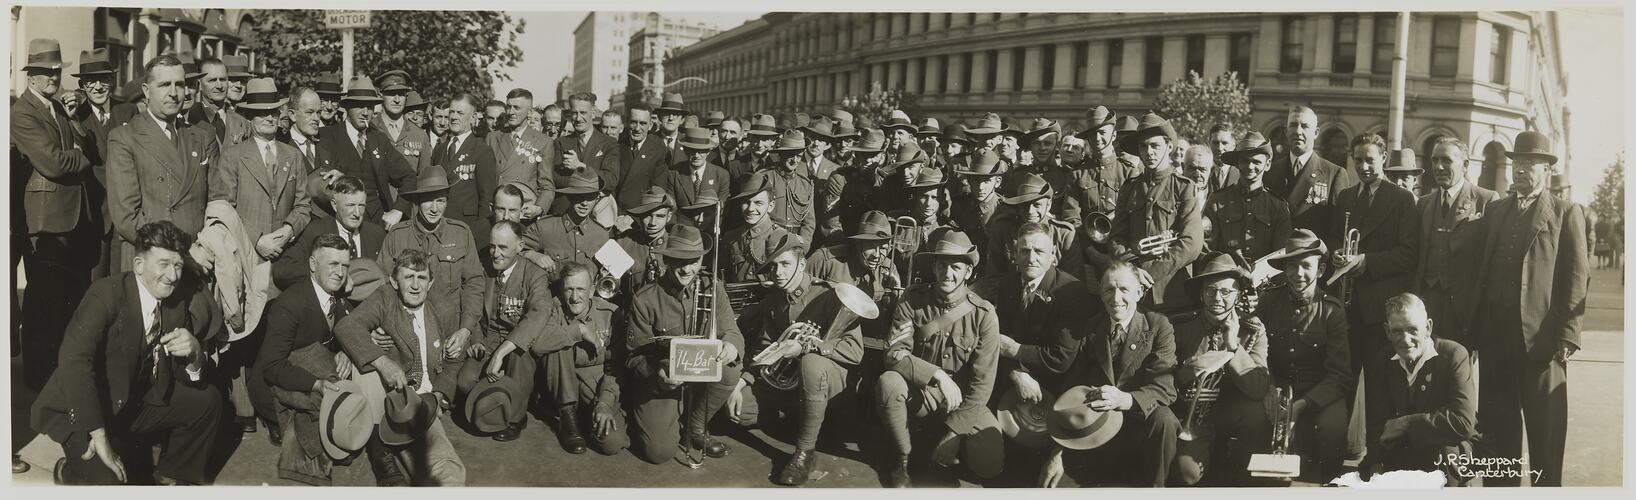 14th Battalion, Anzac Day Marchers, Melbourne, circa 1930s